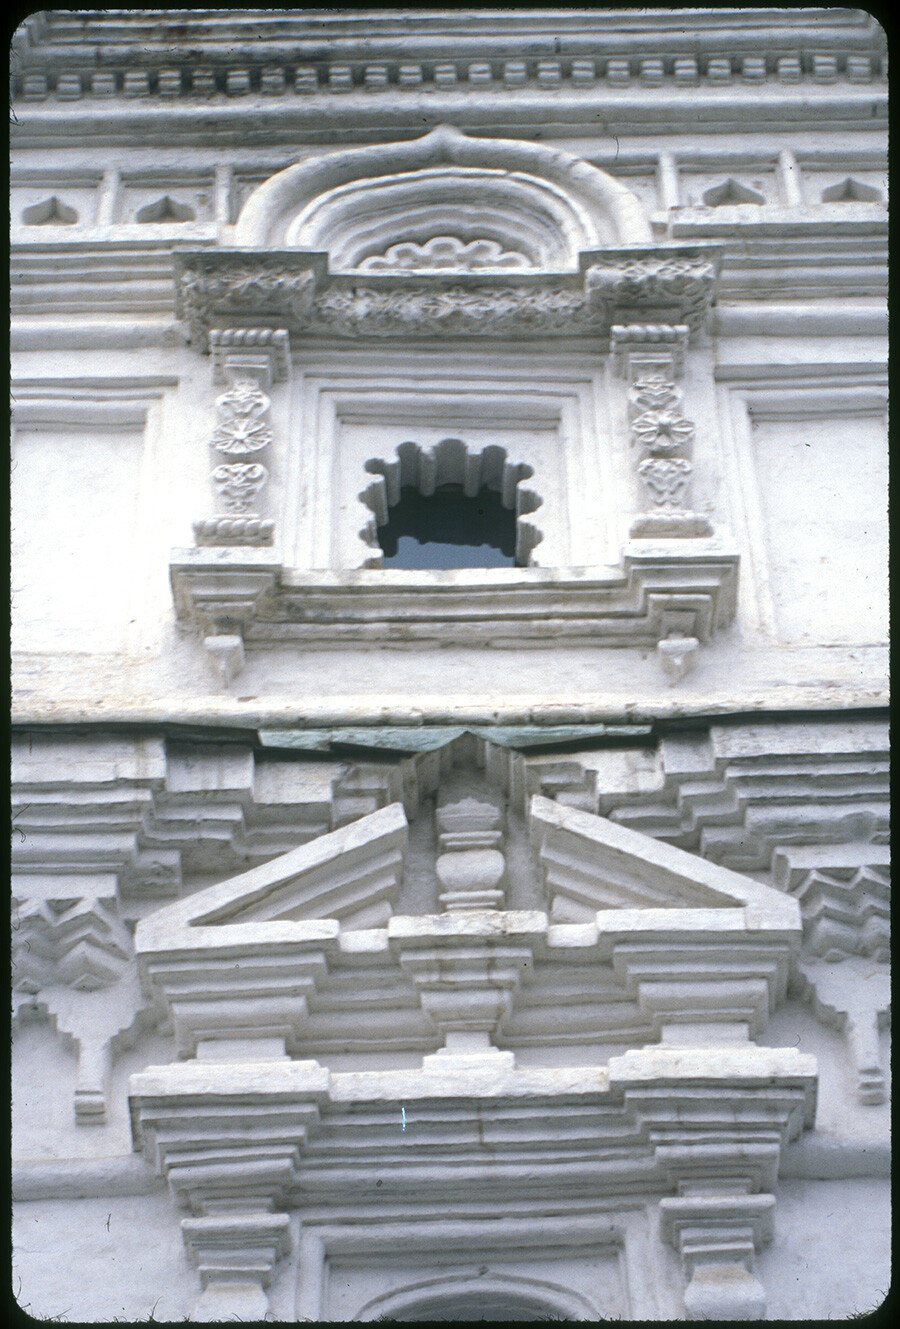 Convento della Trinità. Campanile e Chiesa dell’Icona della Vergine di Kazan, facciata sud. Dettagli decorativi delle finestre. 26 ottobre 2001